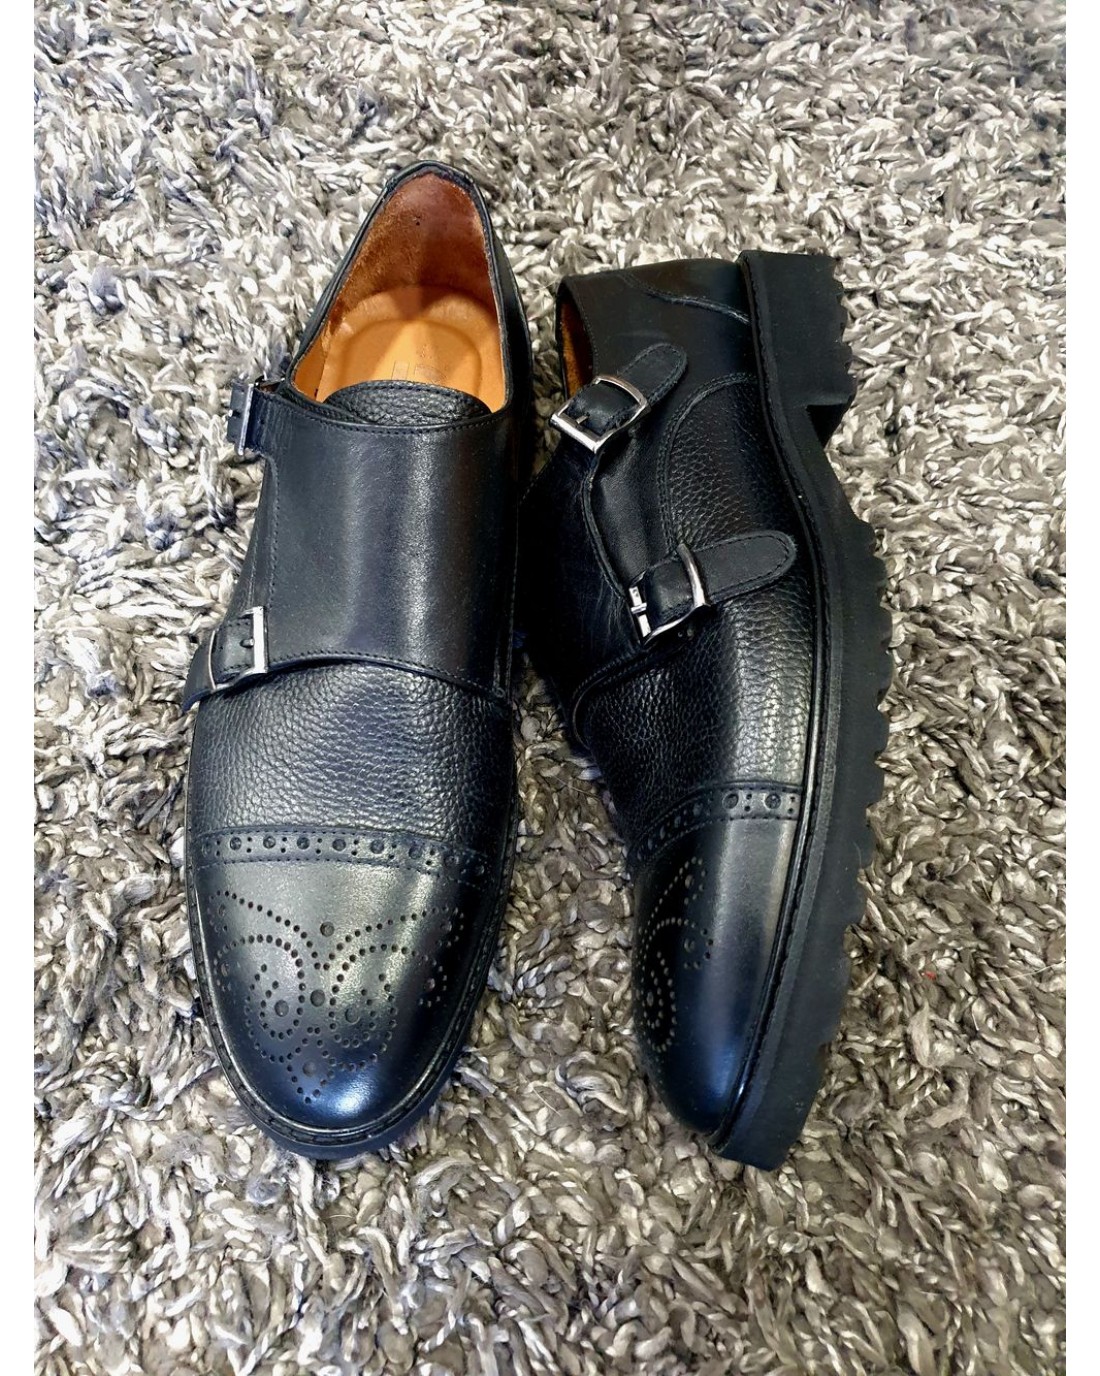 Ανδρικά monk straps παπούτσια μαύρα